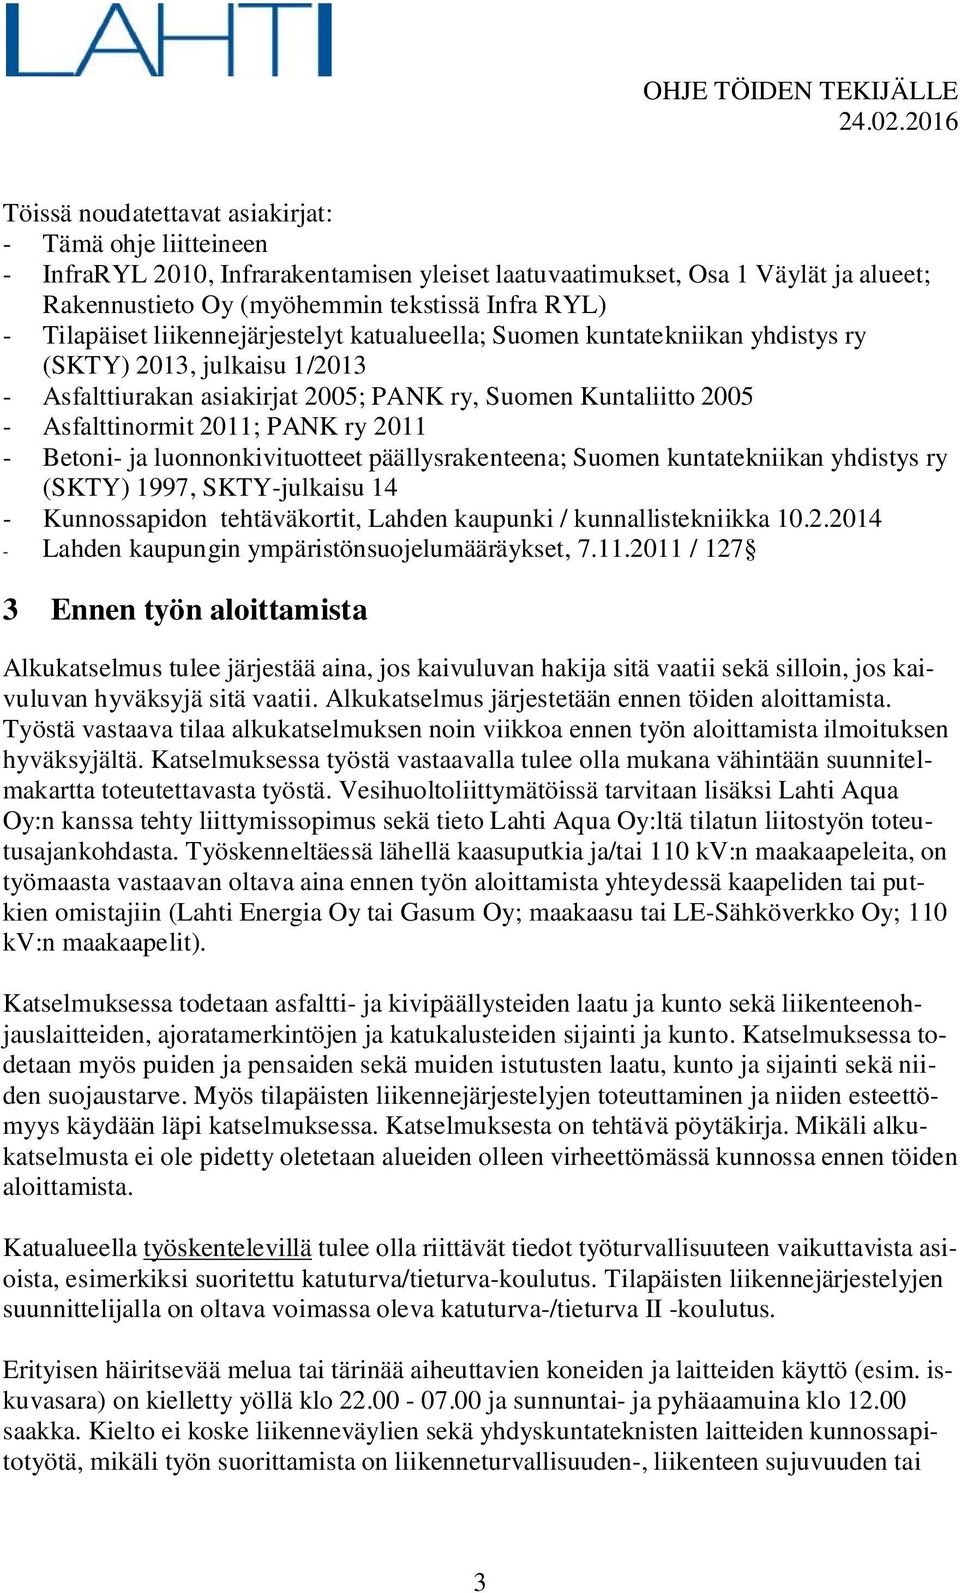 PANK ry 2011 - Betoni- ja luonnonkivituotteet päällysrakenteena; Suomen kuntatekniikan yhdistys ry (SKTY) 1997, SKTY-julkaisu 14 - Kunnossapidon tehtäväkortit, Lahden kaupunki / kunnallistekniikka 10.